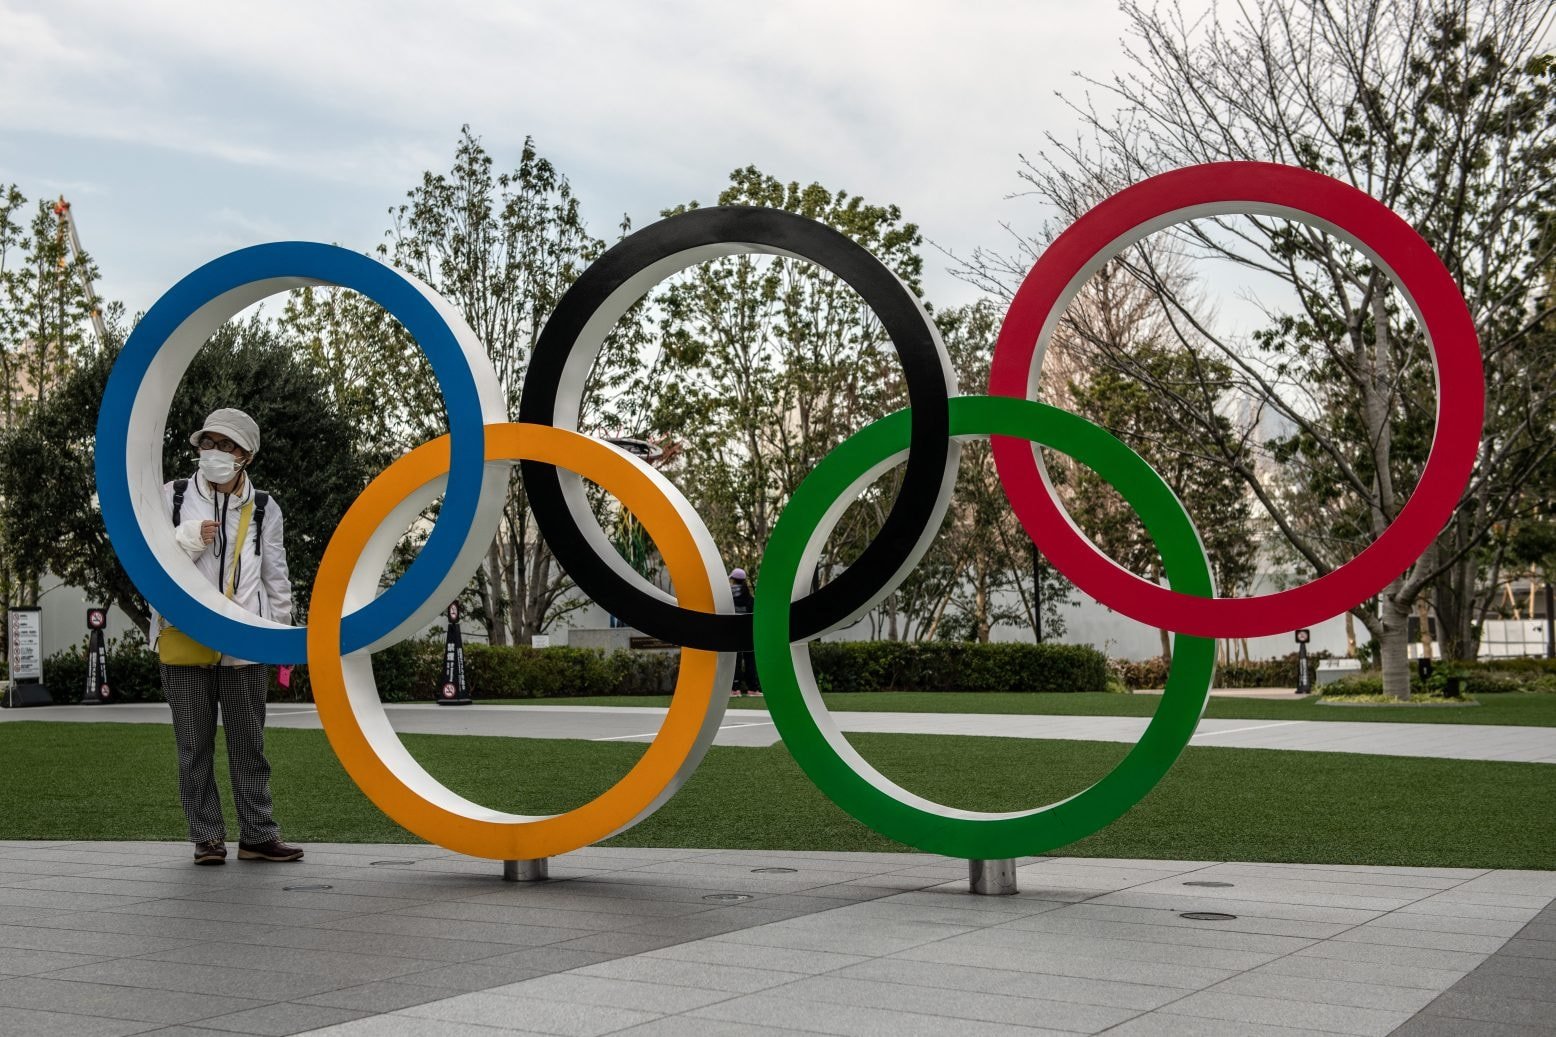 الألعاب الأولمبية طوكيو 2020 .. اليابان تحتضن البطولة الأكبر رياضيا في التاريخ